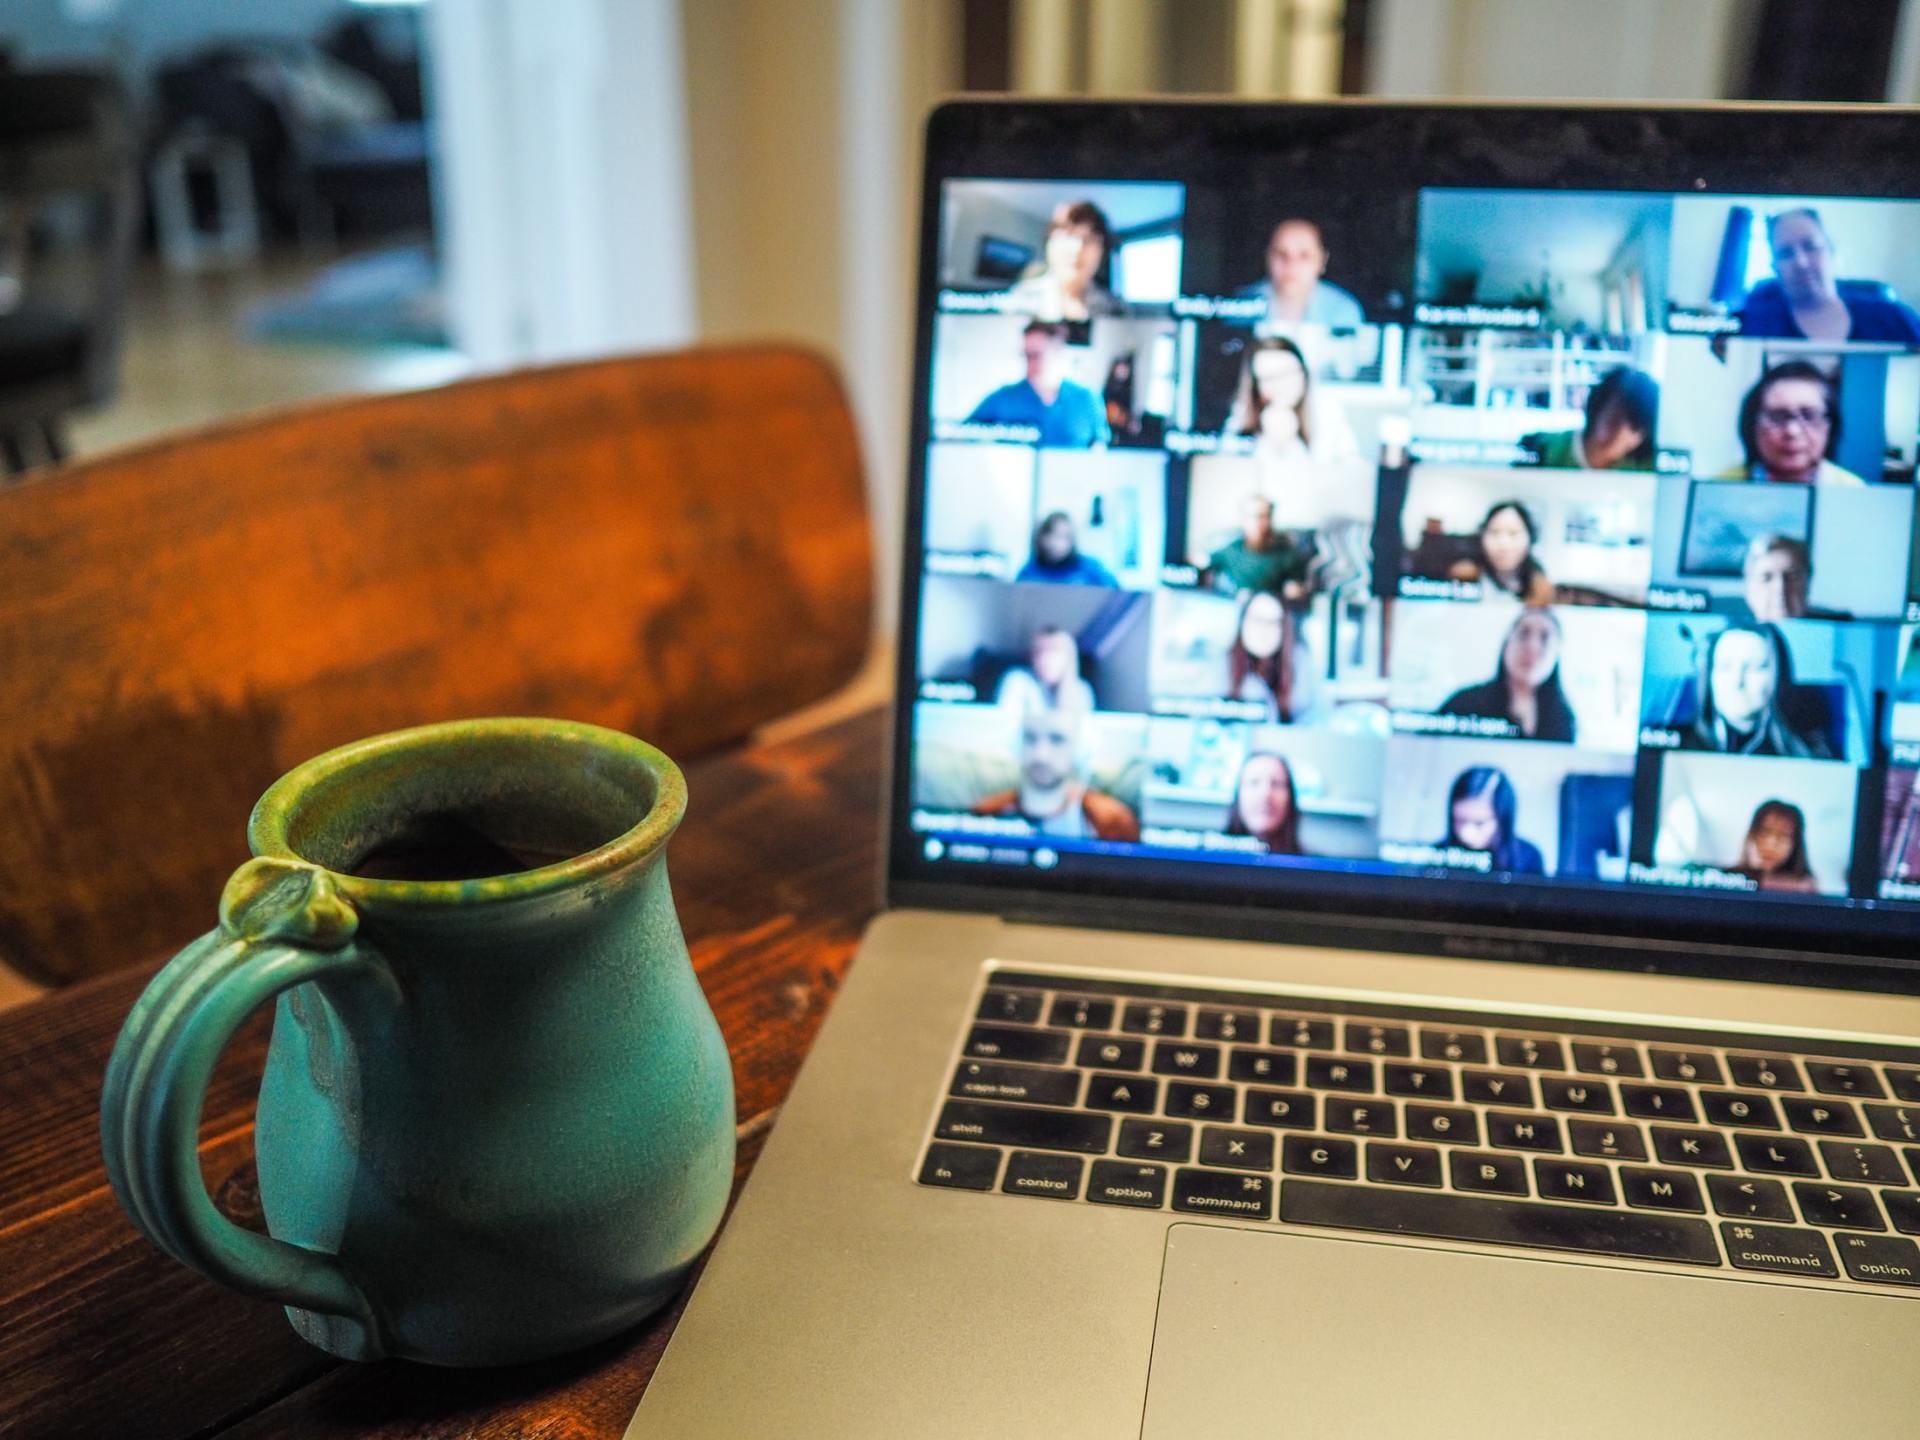 una tazza di caffè accanto a un computer portatile durante una sessione online